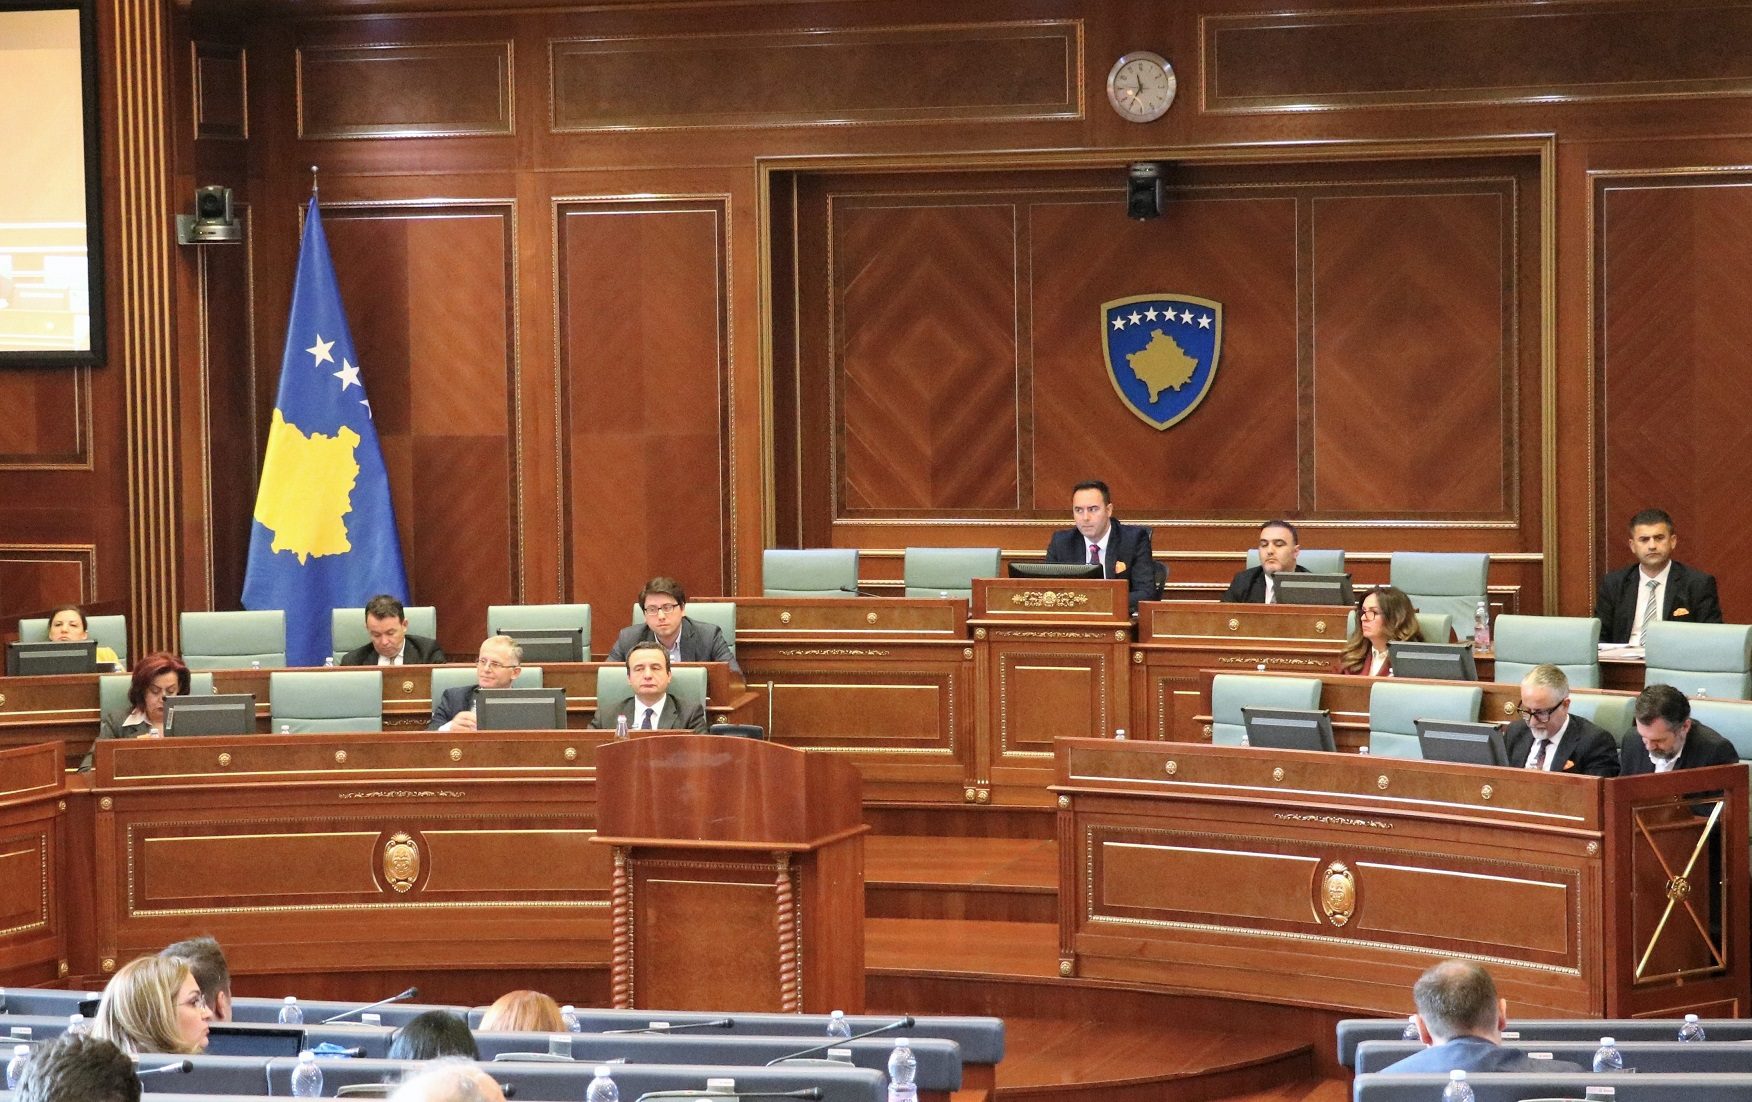 Raporti i DASH-it sot do diskutohet në Kuvendin e Kosovës